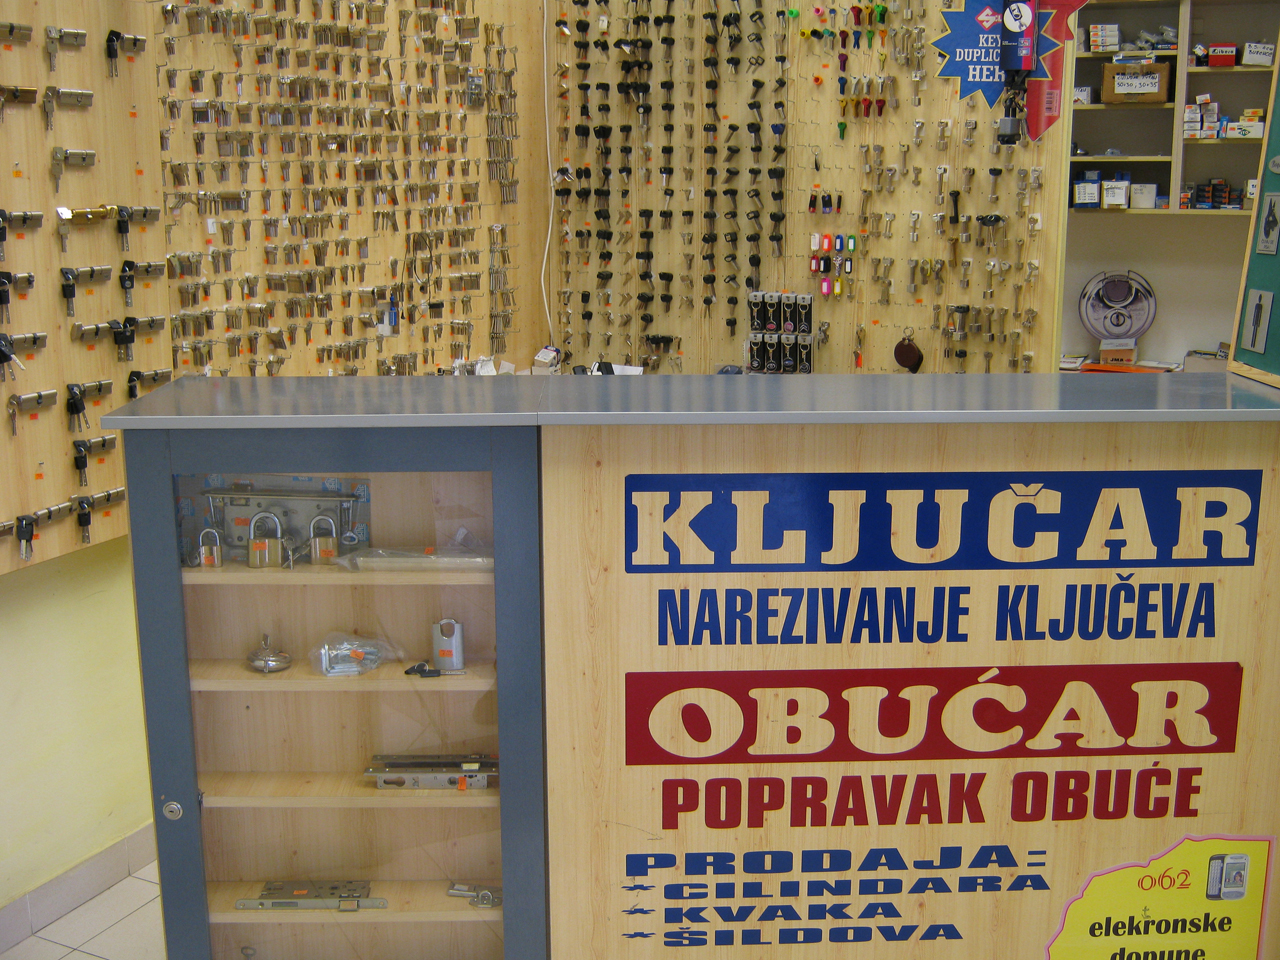 LOCKSMITH SHOP NEDELJKOVIC Locksmiths shop Beograd